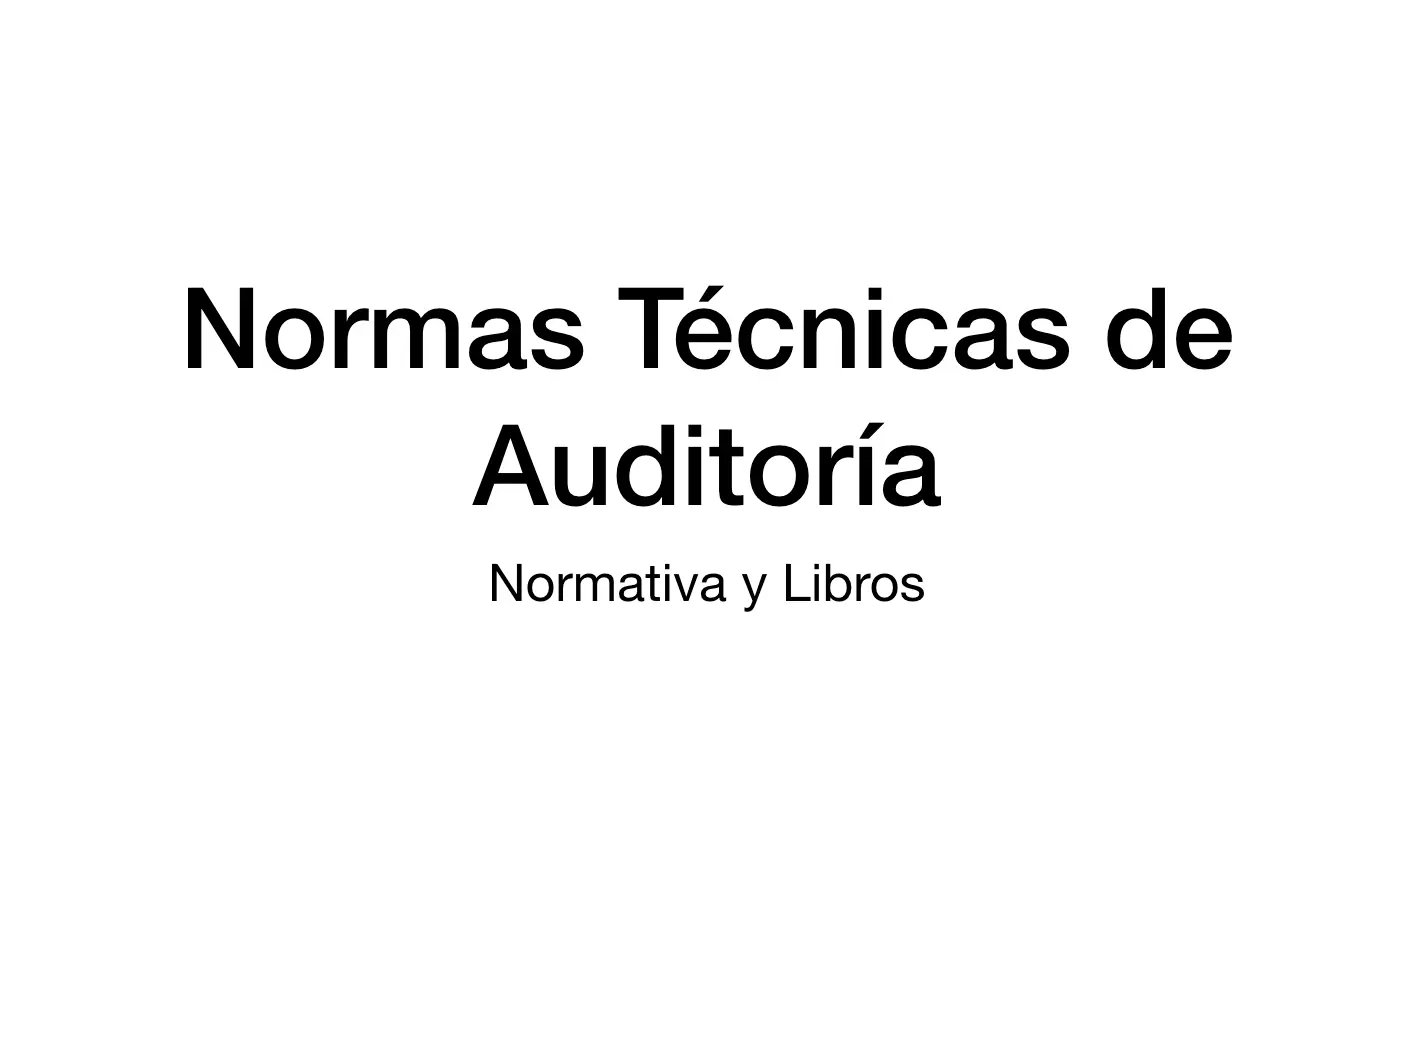 normas tecnicas de auditoria - Qué son las NTA auditoría